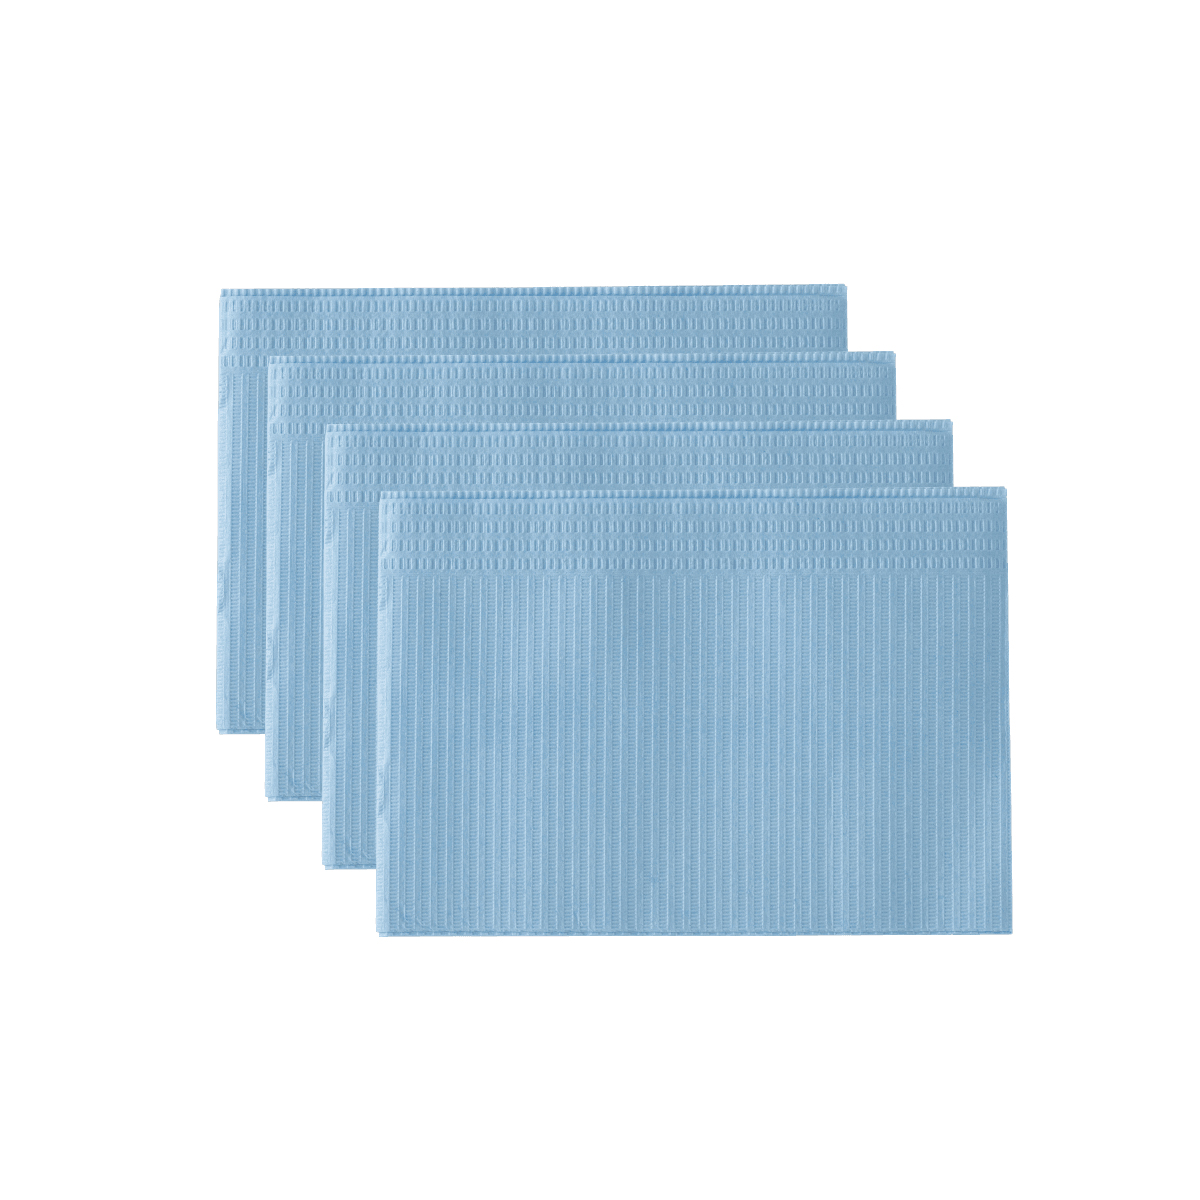 Monoart Patientenservietten Towel UP Farbe: hellblau (Euronda)